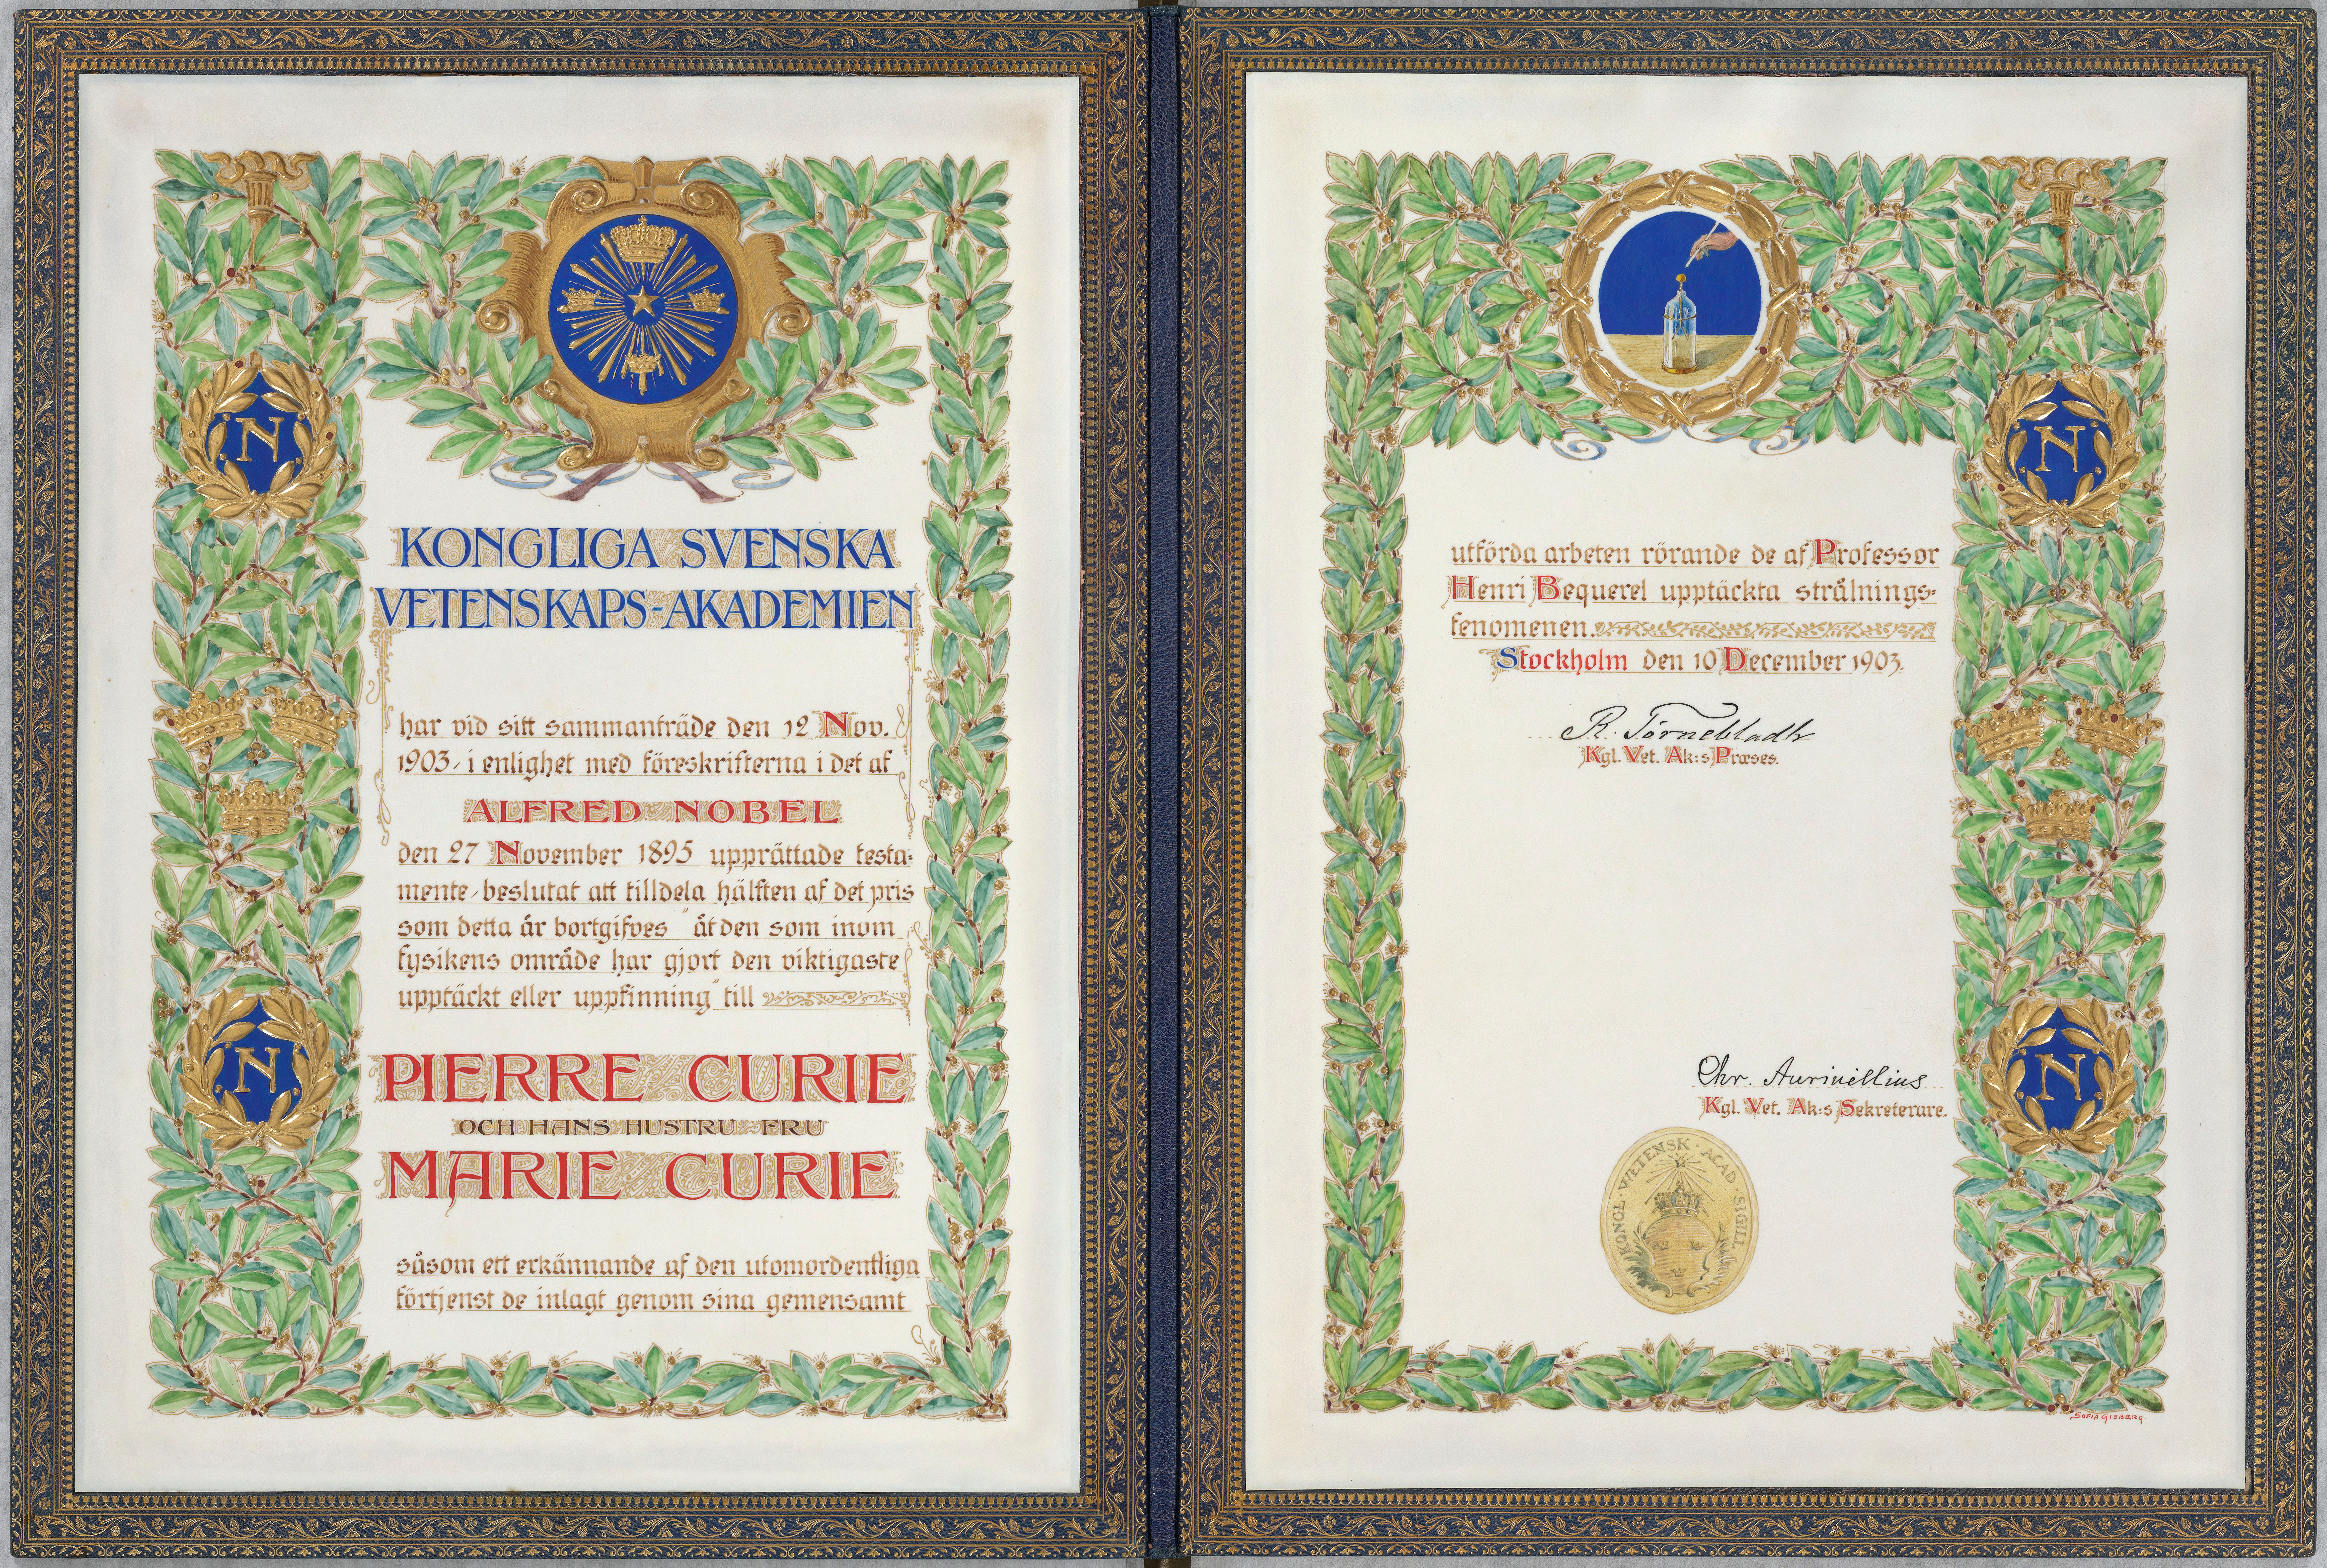 El diploma del Premio Nobel de física de 1903 otorgado por mitad a Pierre y Marie Curie, y por mitad a Henri Becquerel. Su nombre figura en el texto de la recompensa entregada a la pareja.